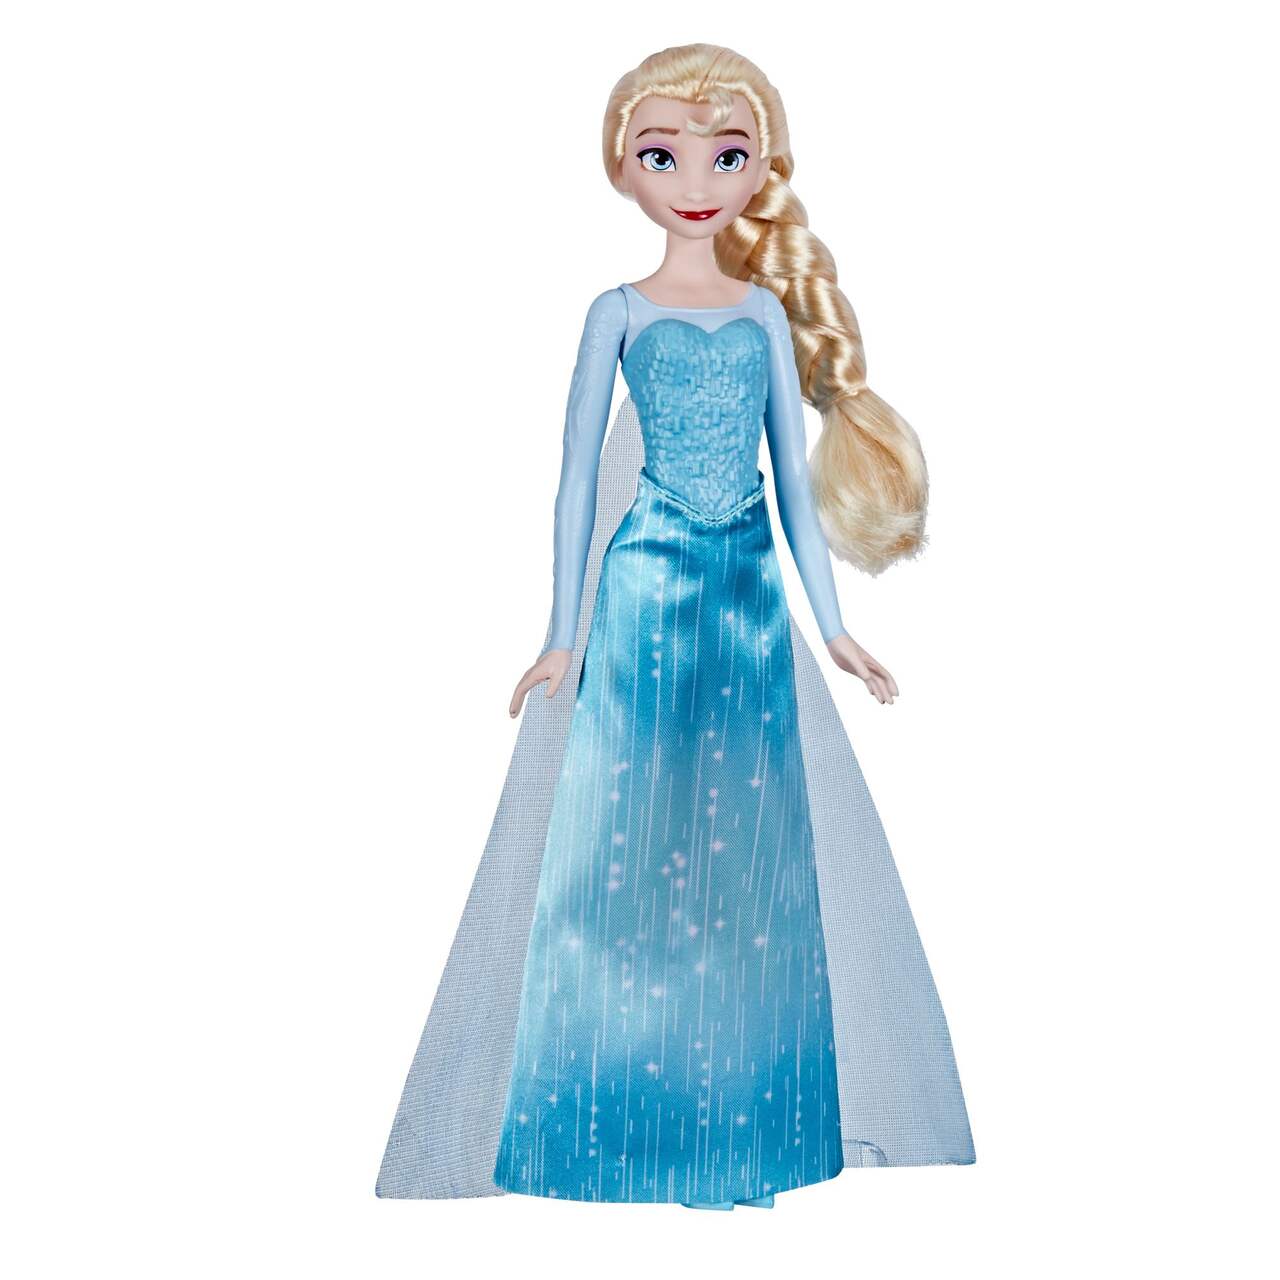 Poupée mode scintillante Disney La Reine des neiges, Elsa, 3 ans et plus